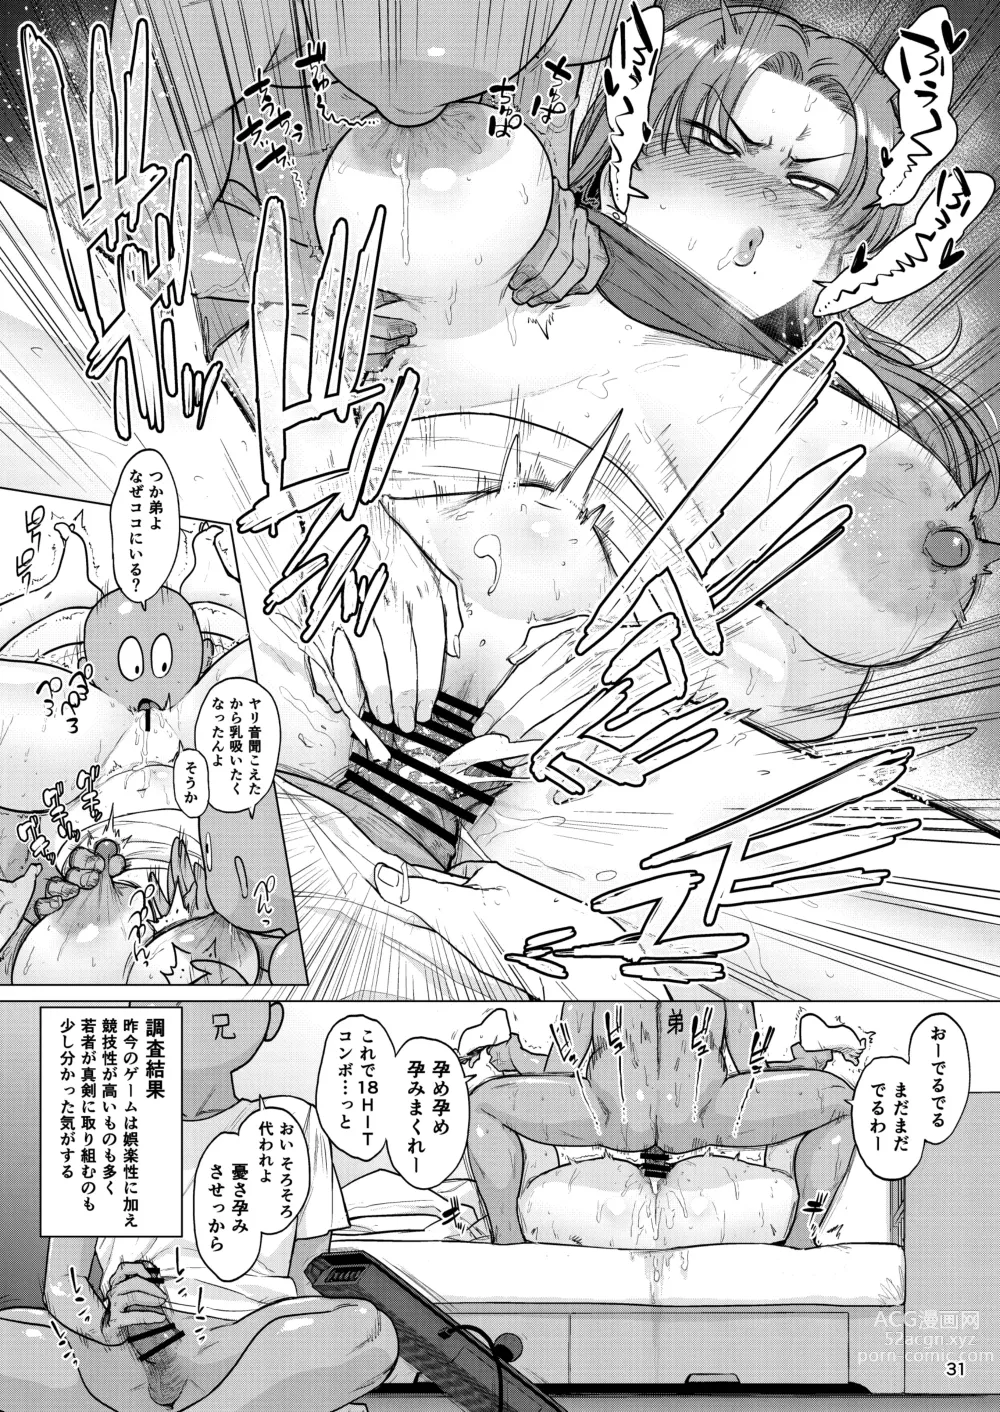 Page 30 of doujinshi Nandemo Chousa Mama Kuma Shizue wa Teiko ga Dekinai